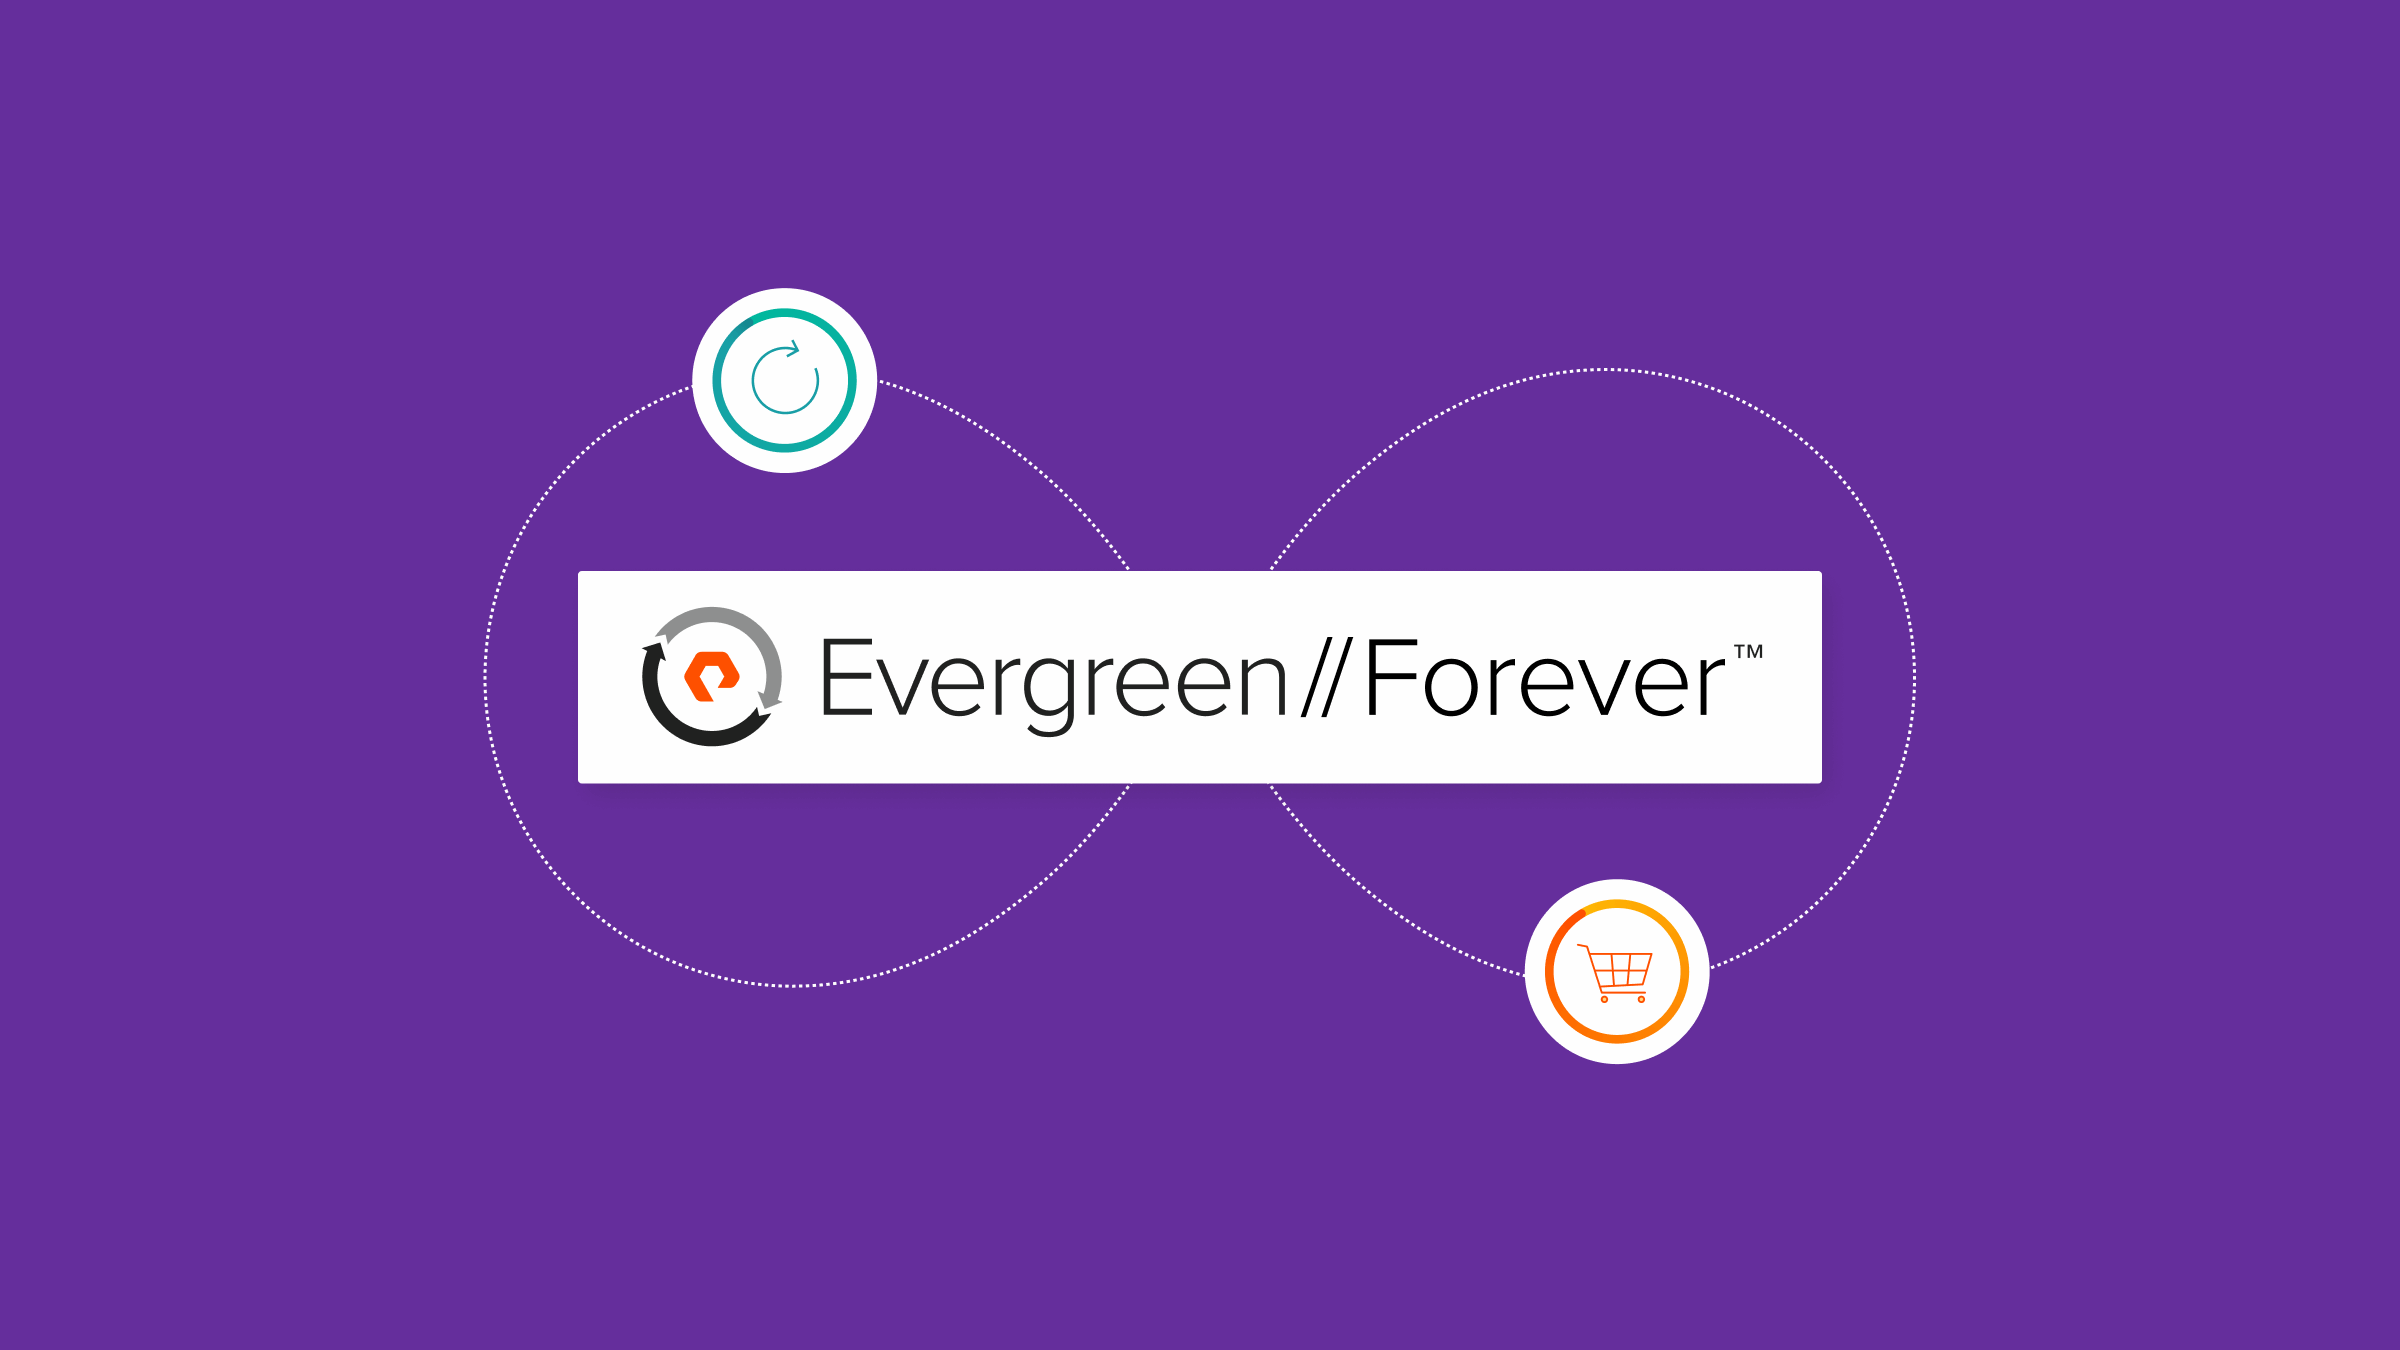 Evergreen//Forever Votre abonnement à l’innovation